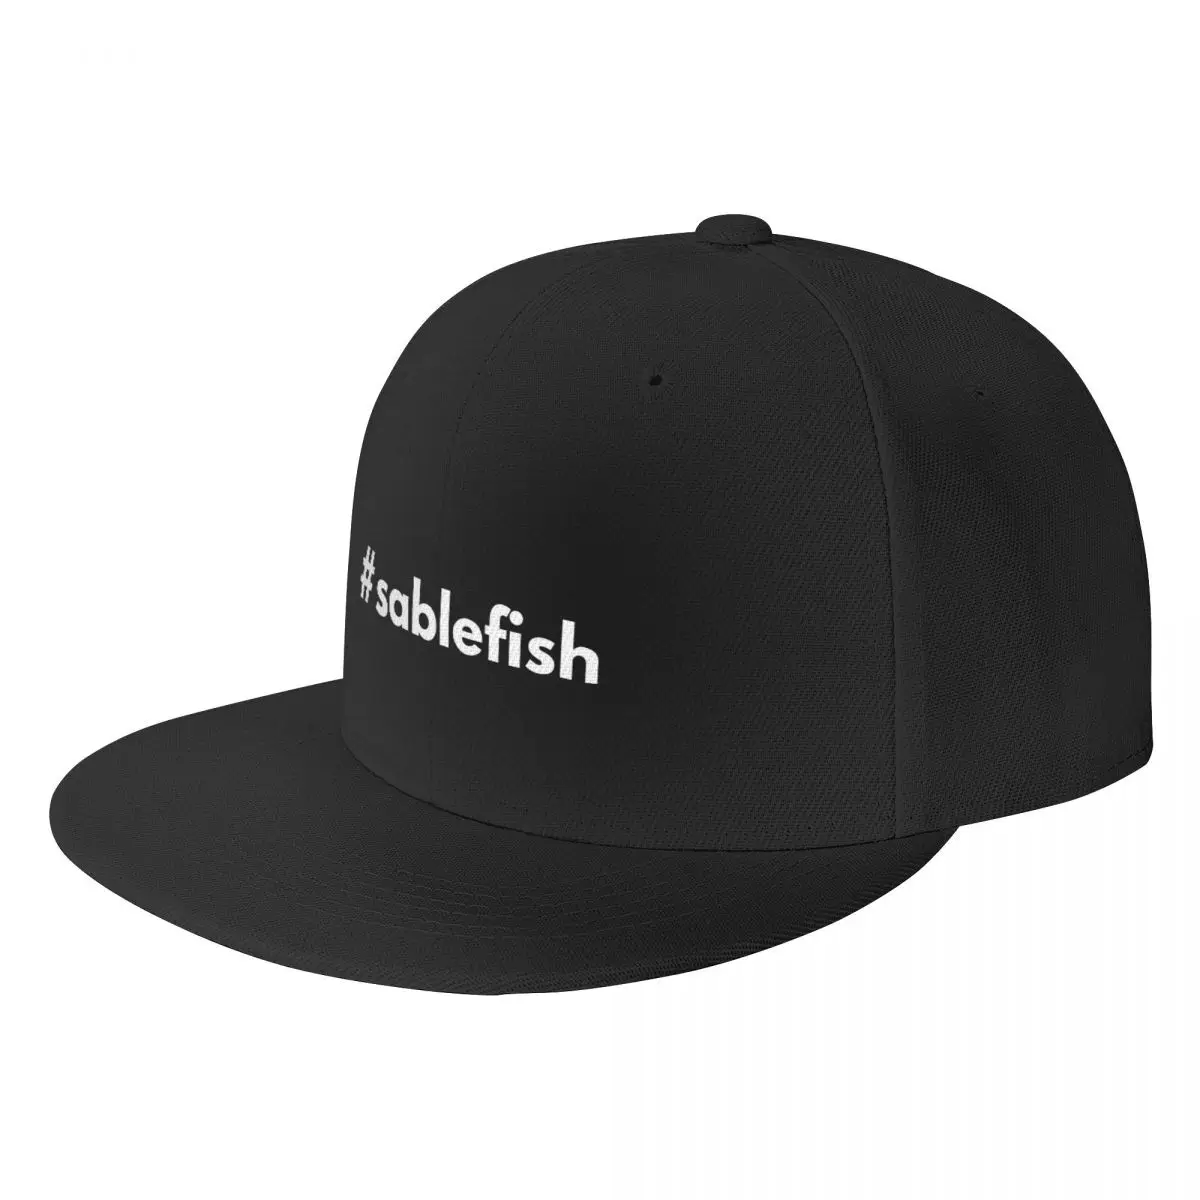 

Бейсболка Hashtag sablefish, кепка для гольфа, мужская пляжная шапка, Пушистая Шапка, солнцезащитная Кепка для женщин и мужчин